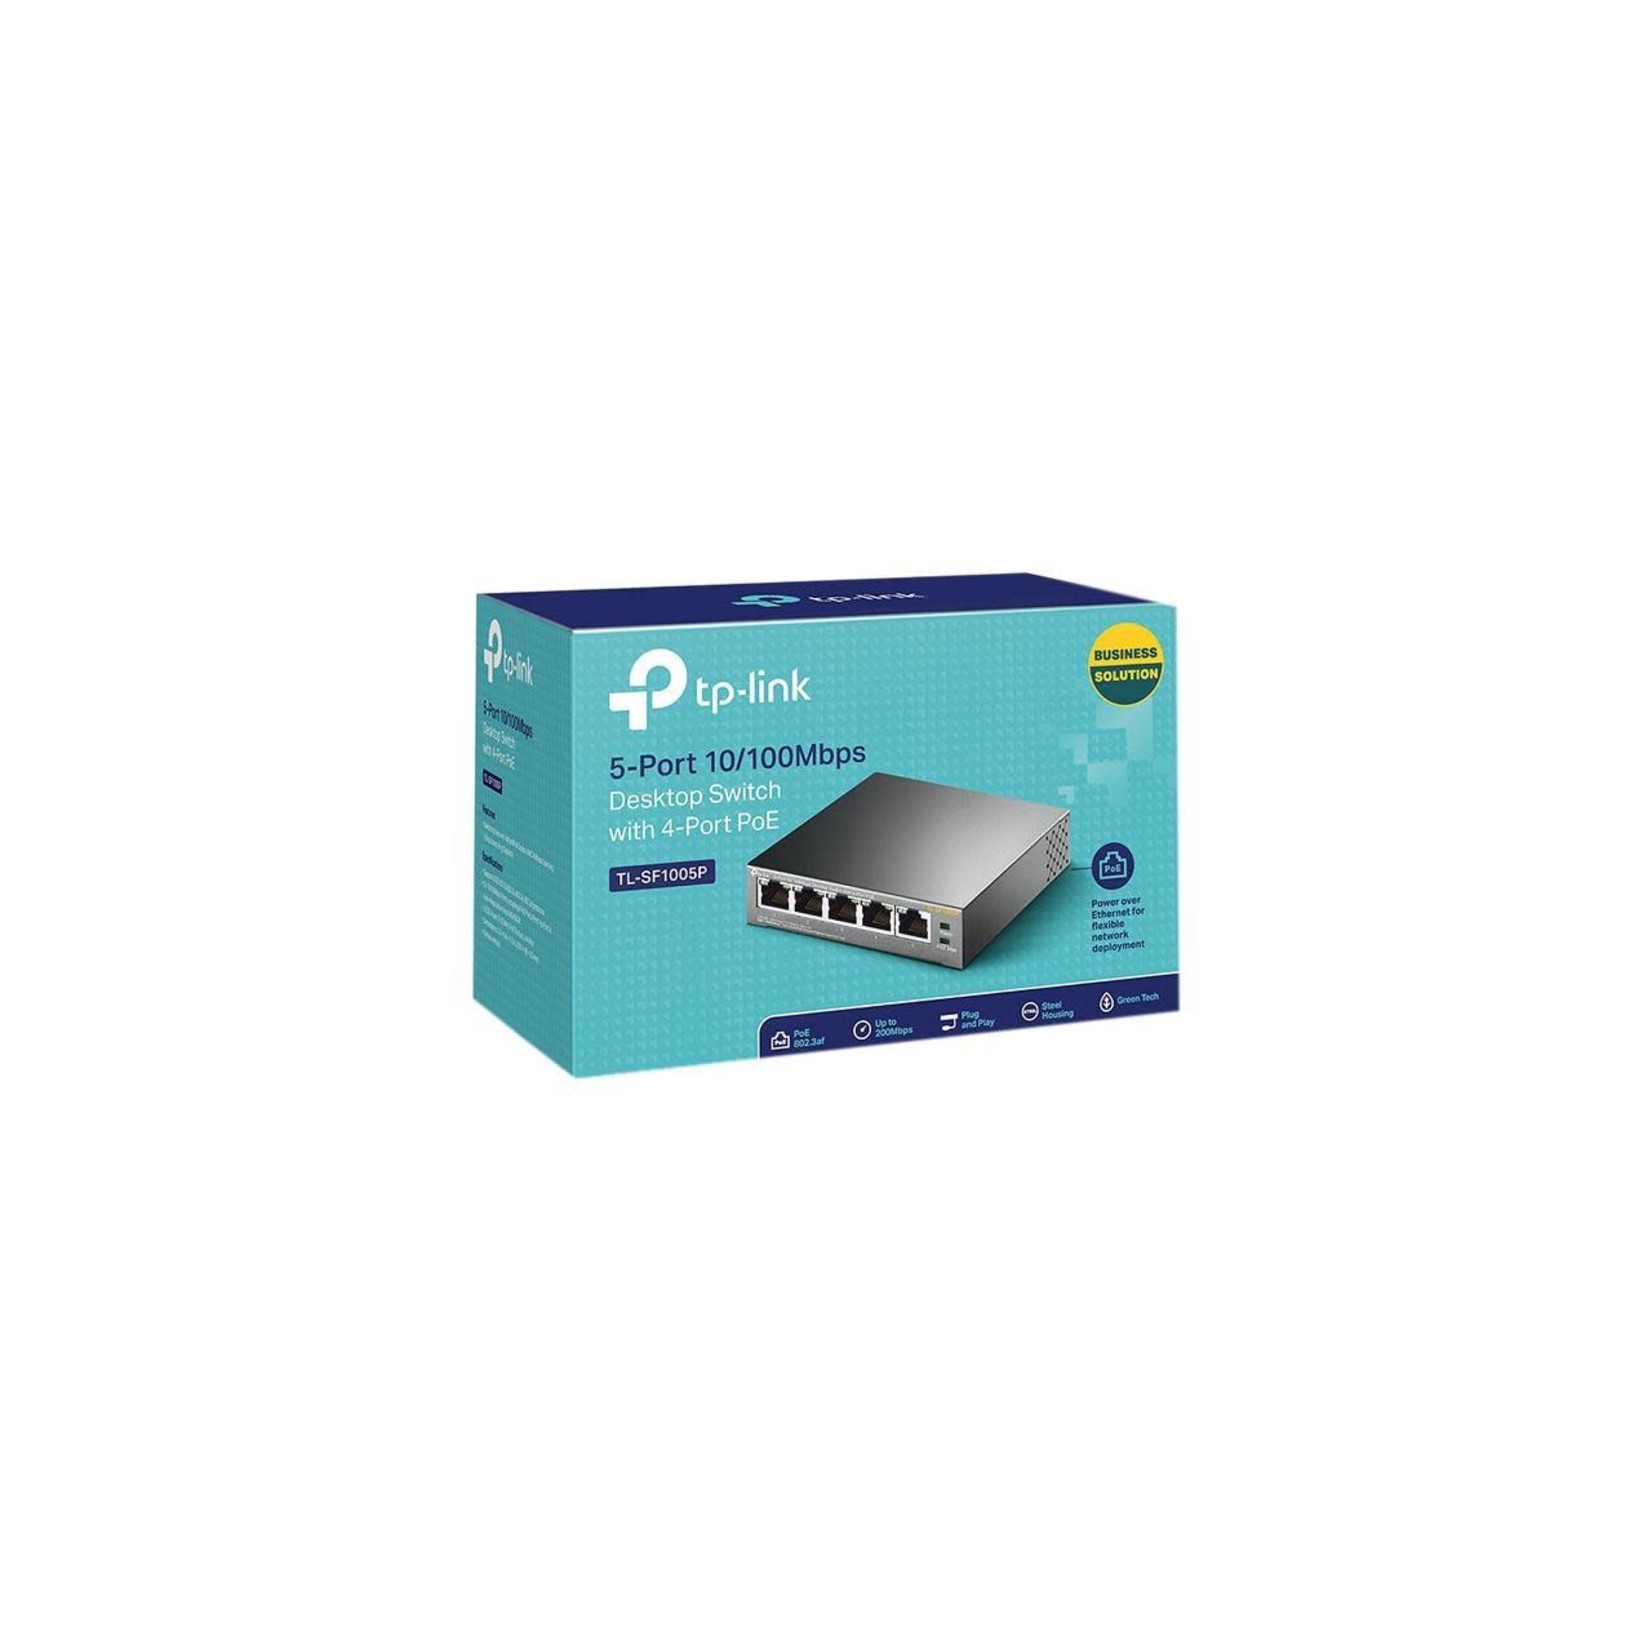 TP-LINK TP-Link TL-SF1005P 5-Port 10/100Mbps Desktop Switch with 4-Port PoE